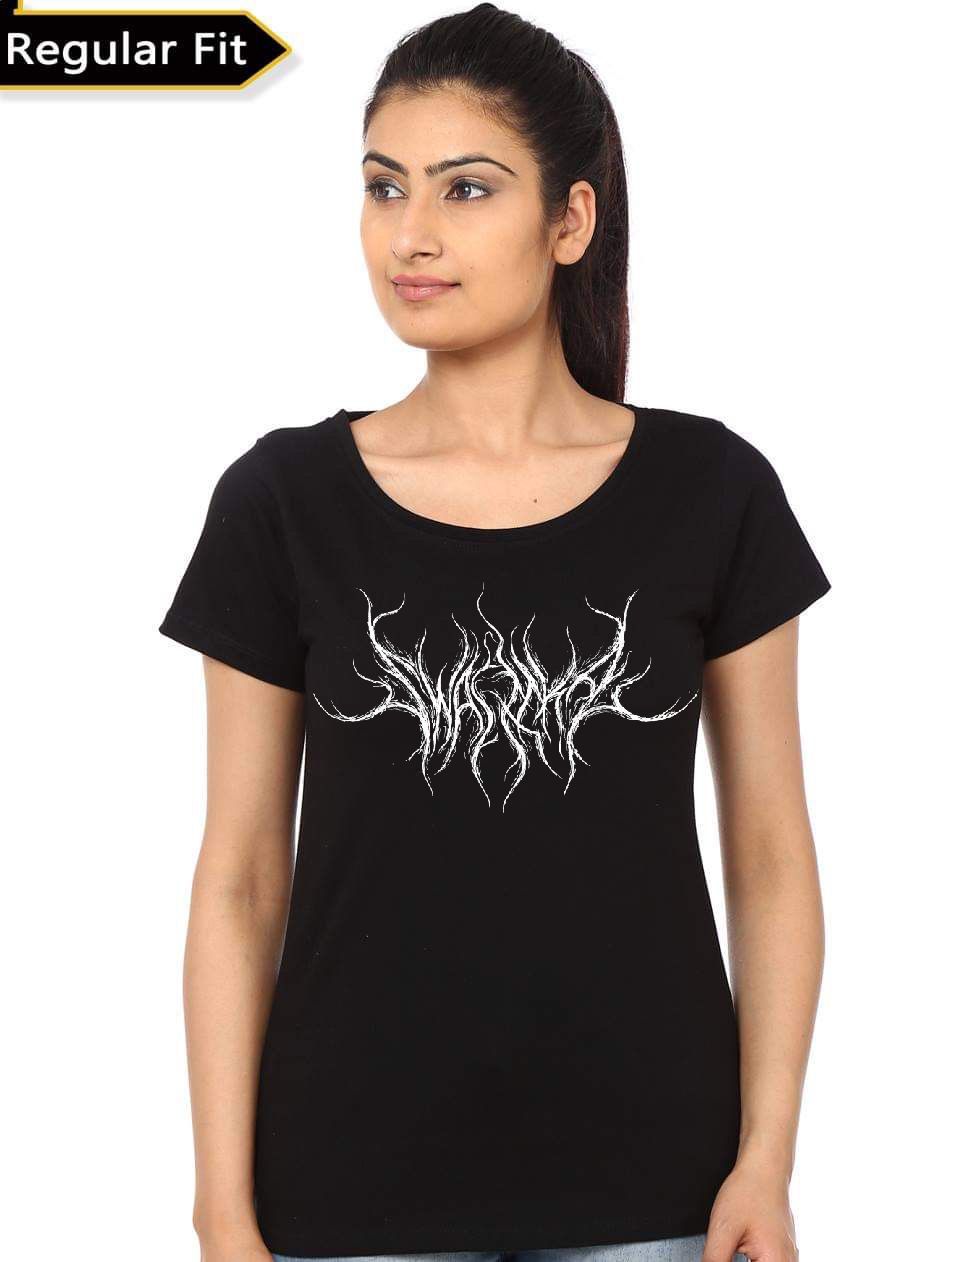 forhold værdighed Mug Rock Metal Band Girls T-Shirt - Shark Shirts